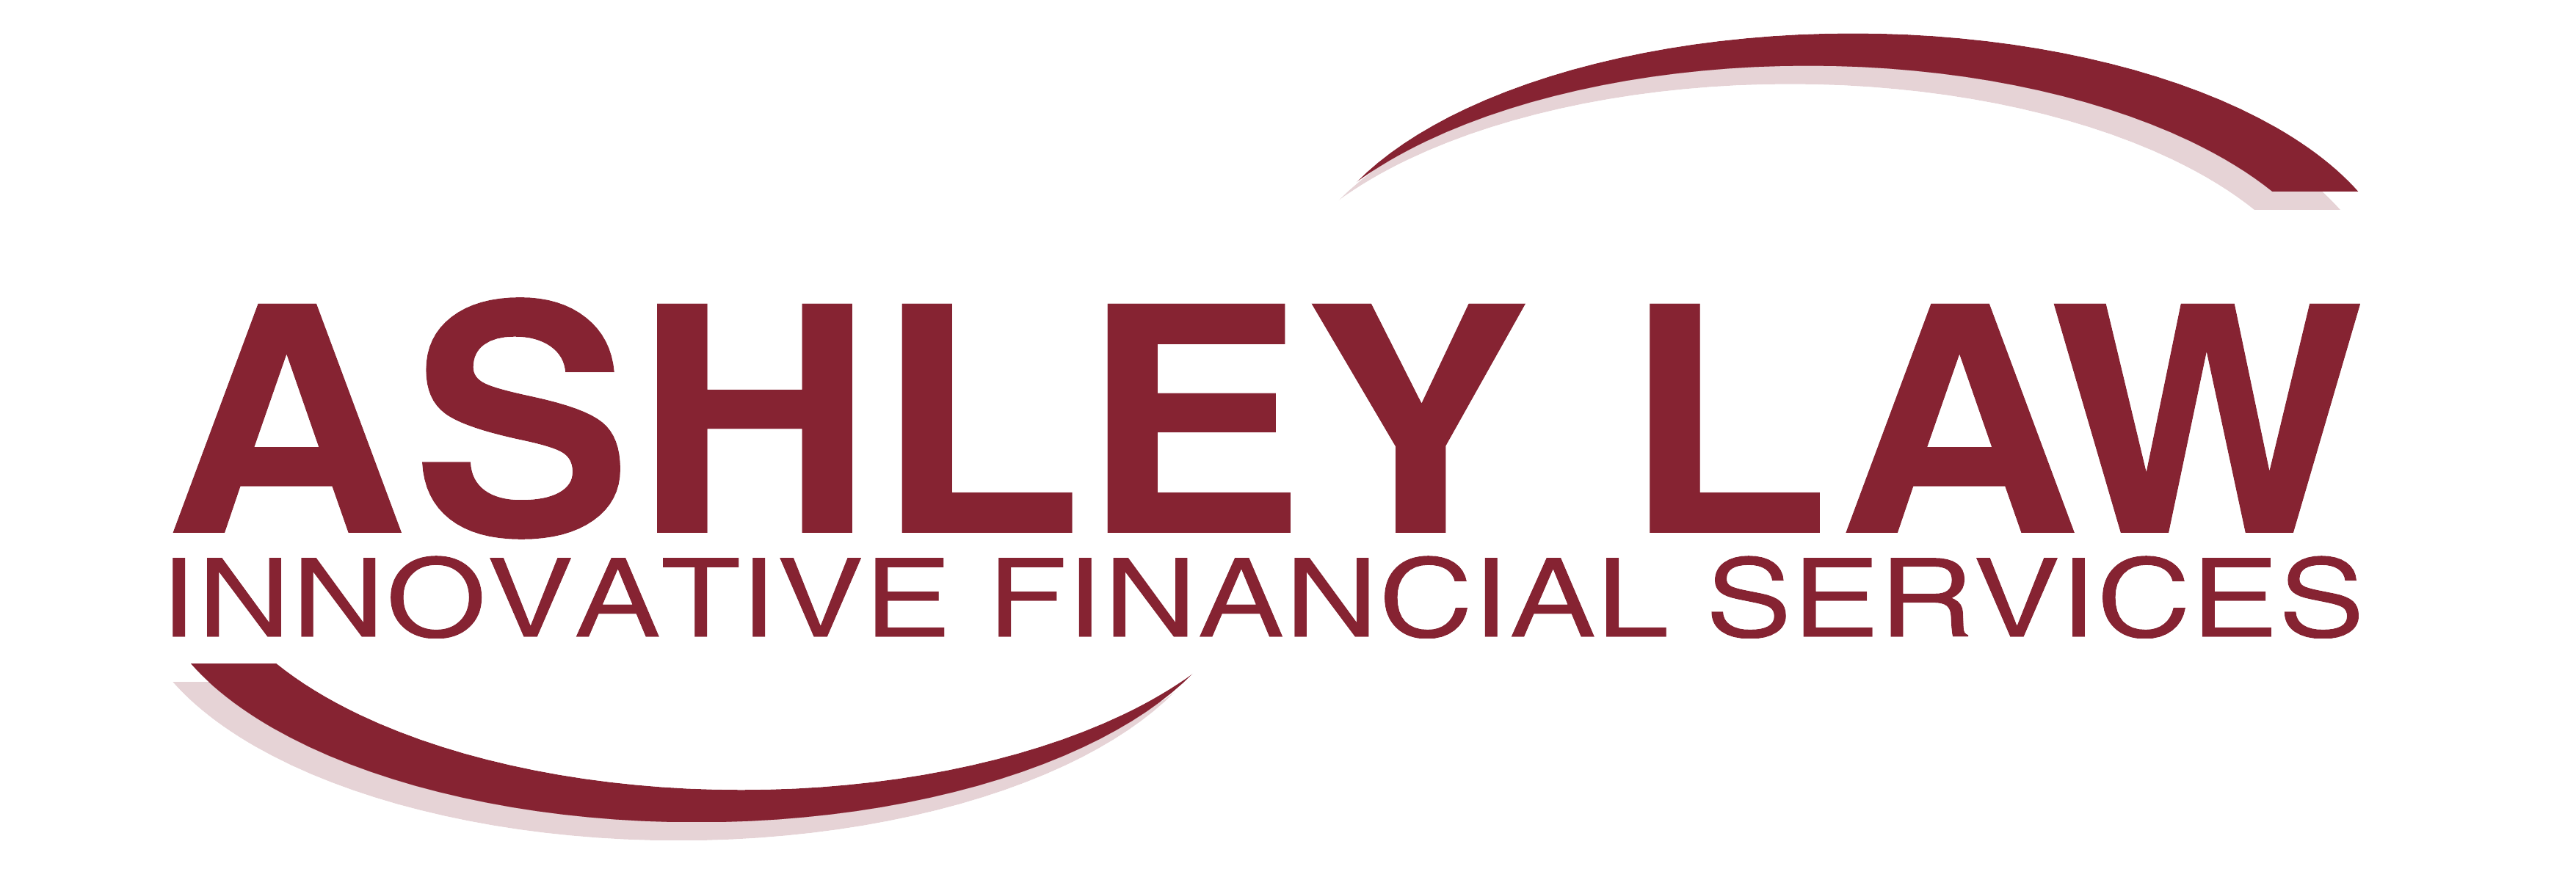 Ashley Law IFS Logo